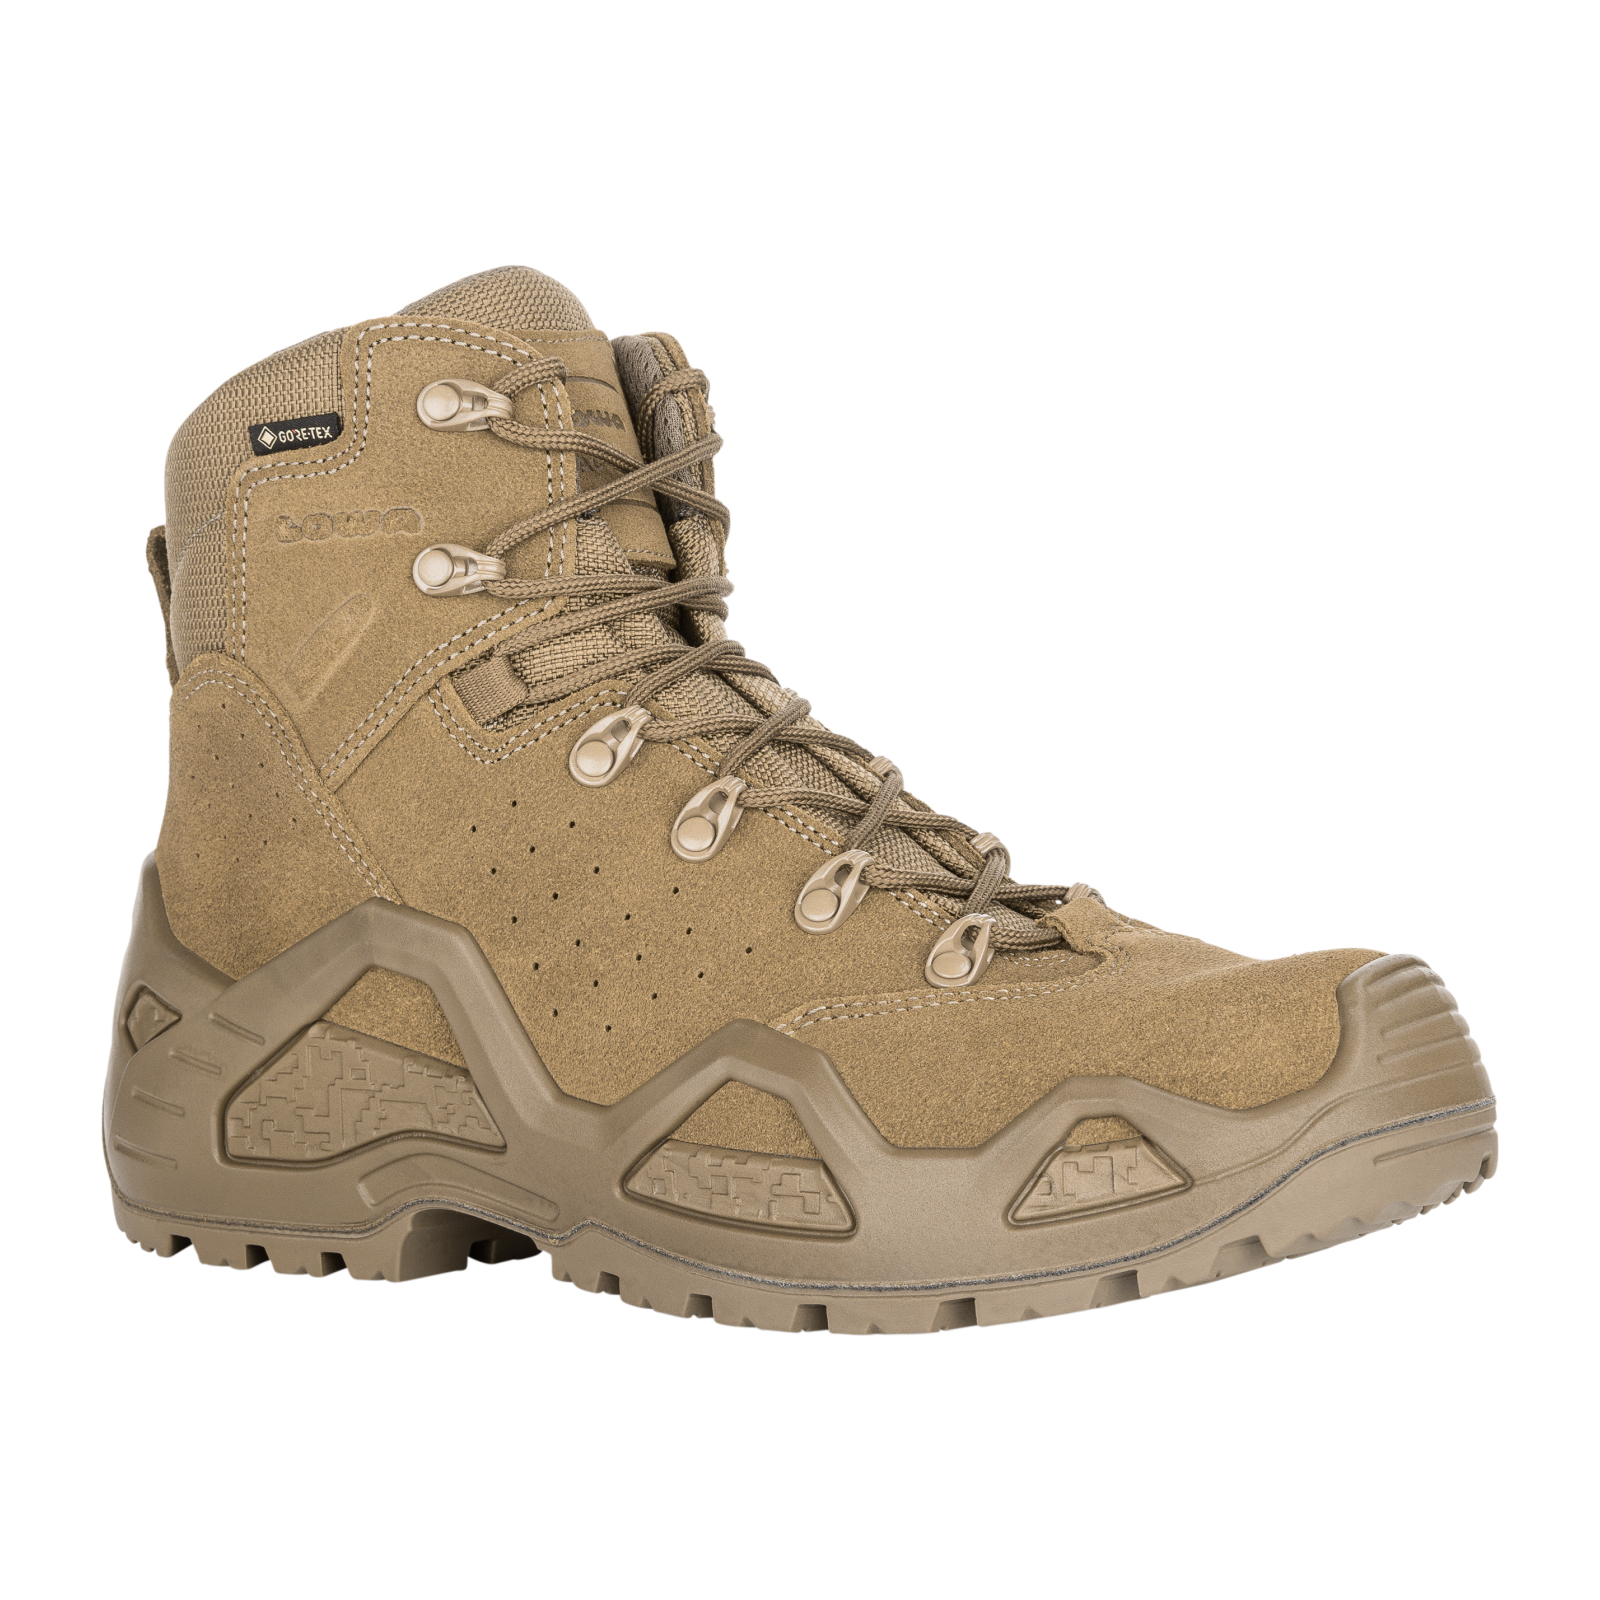 Buy Lowa Z-6S GTX C Boots, Coyote OP - 310688/0731. Price 